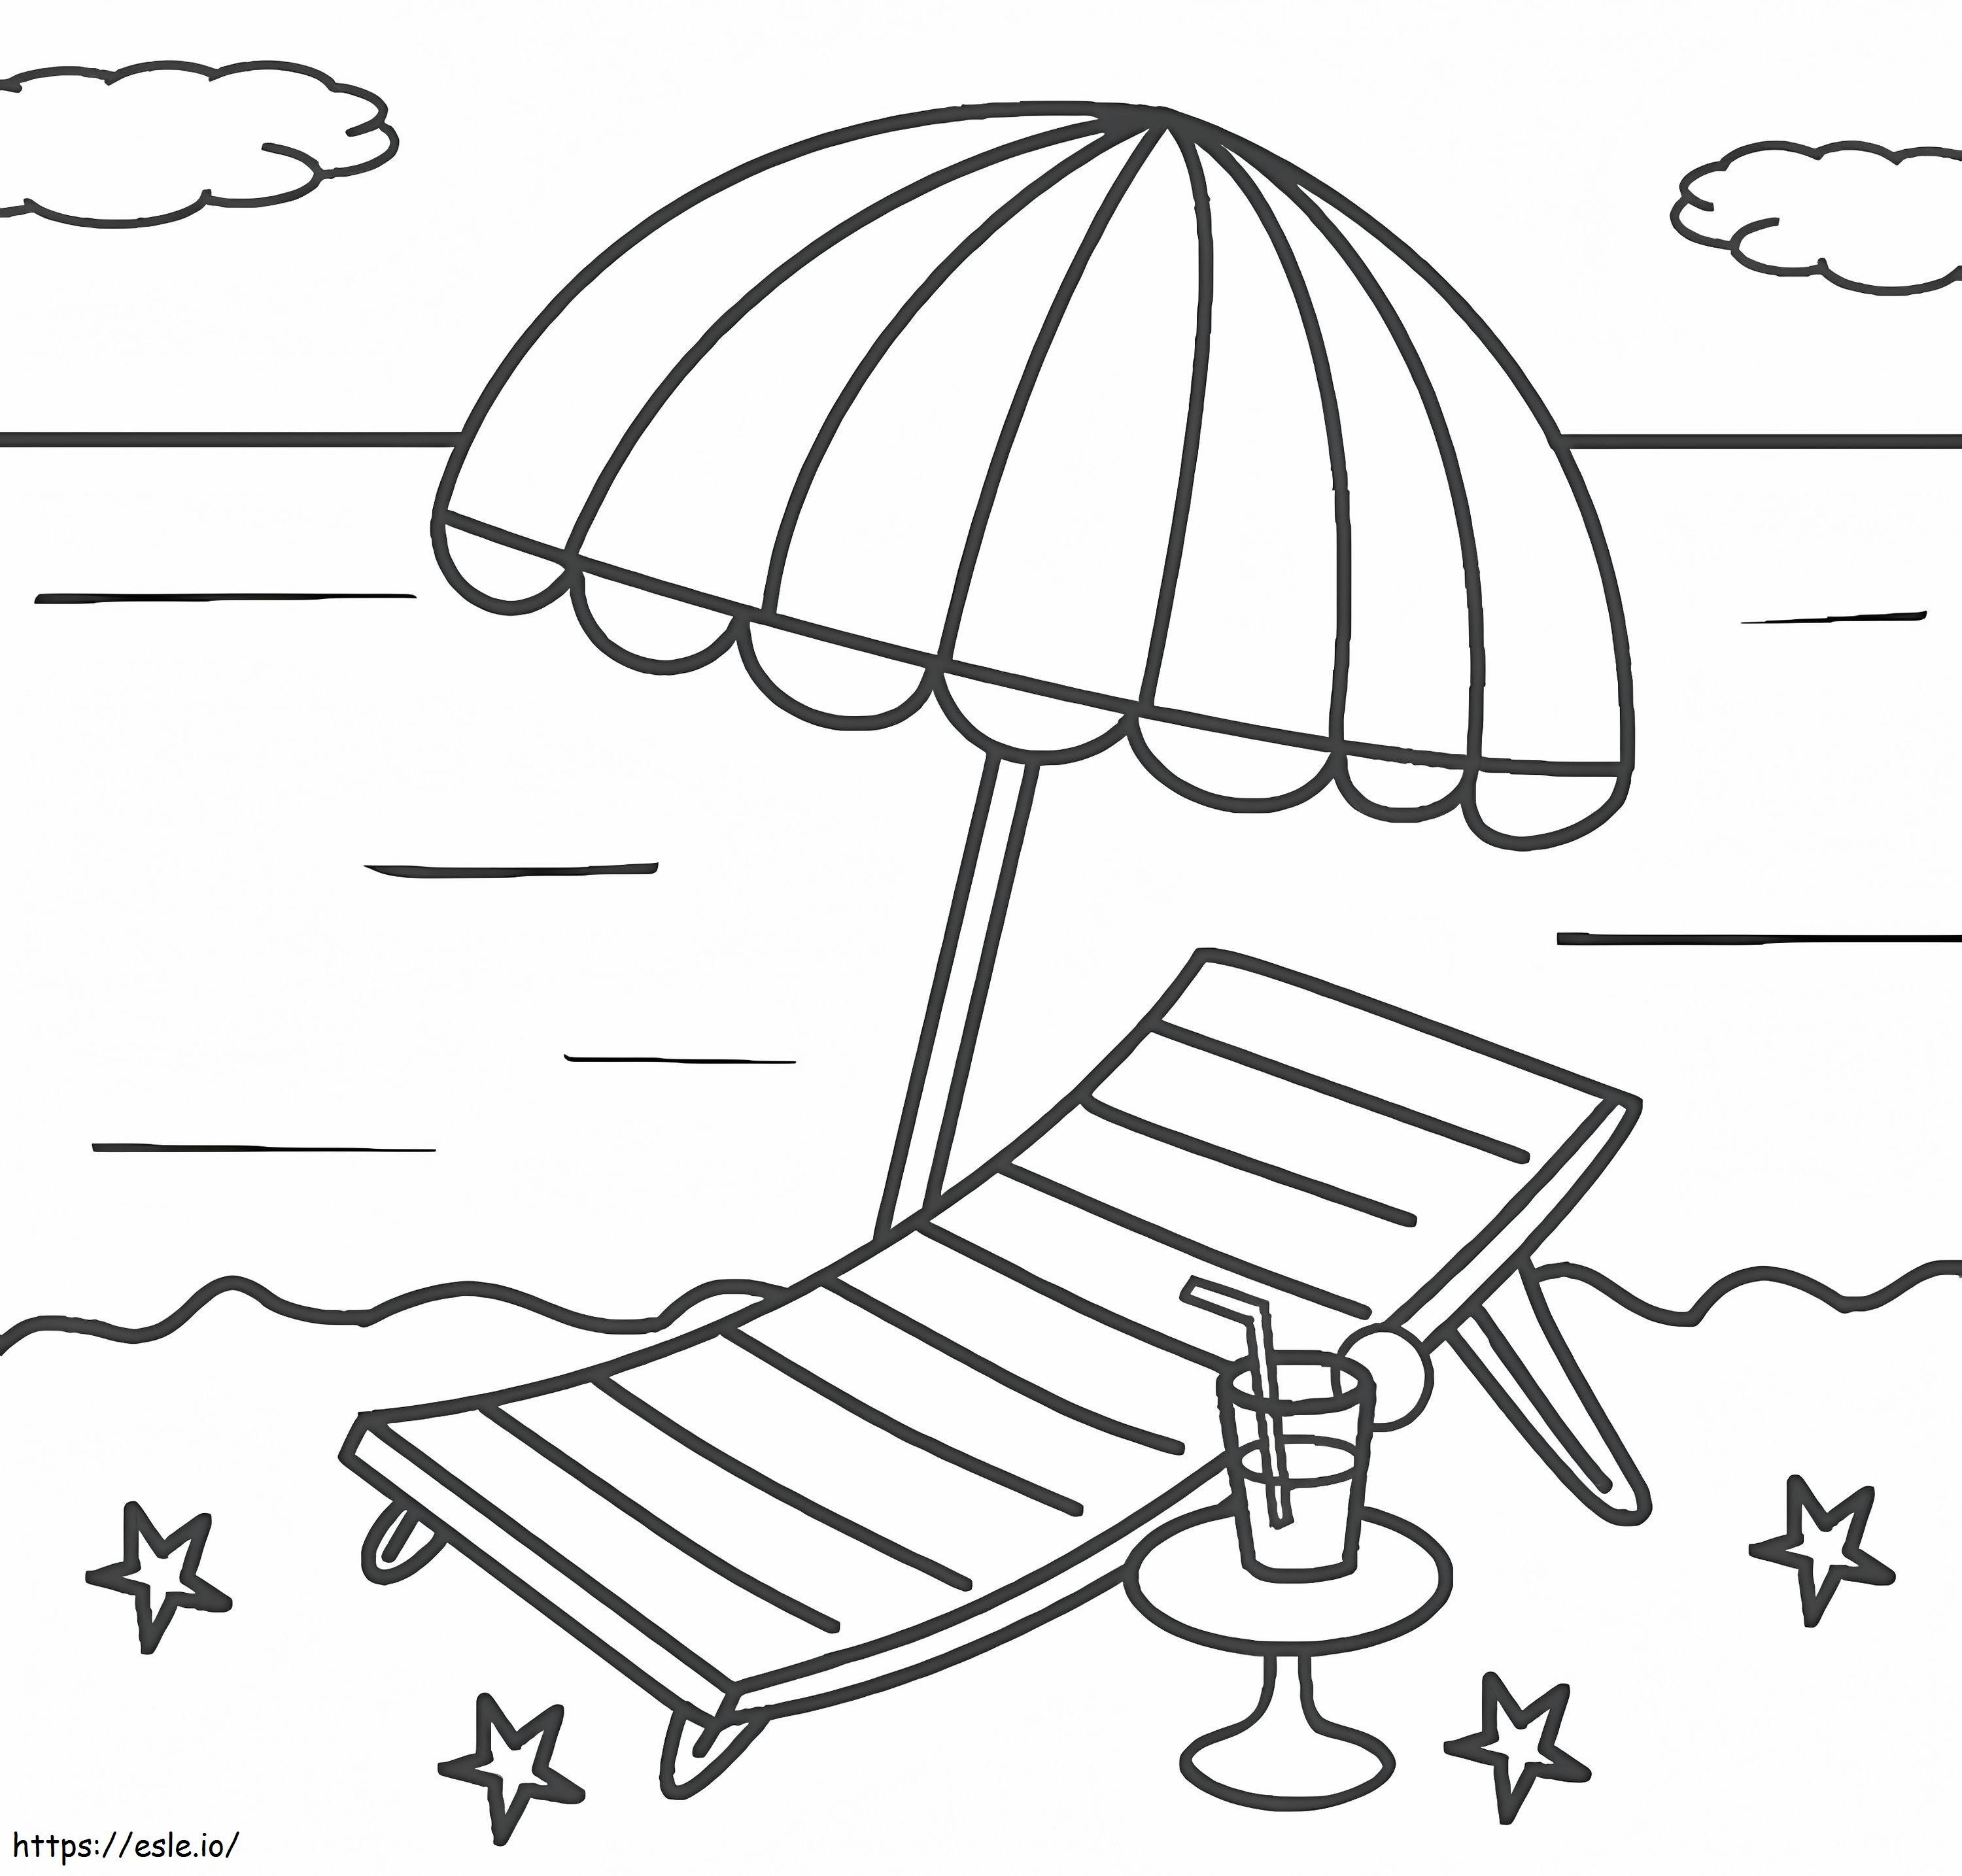 Strandkorb und Sonnenschirm ausmalbilder